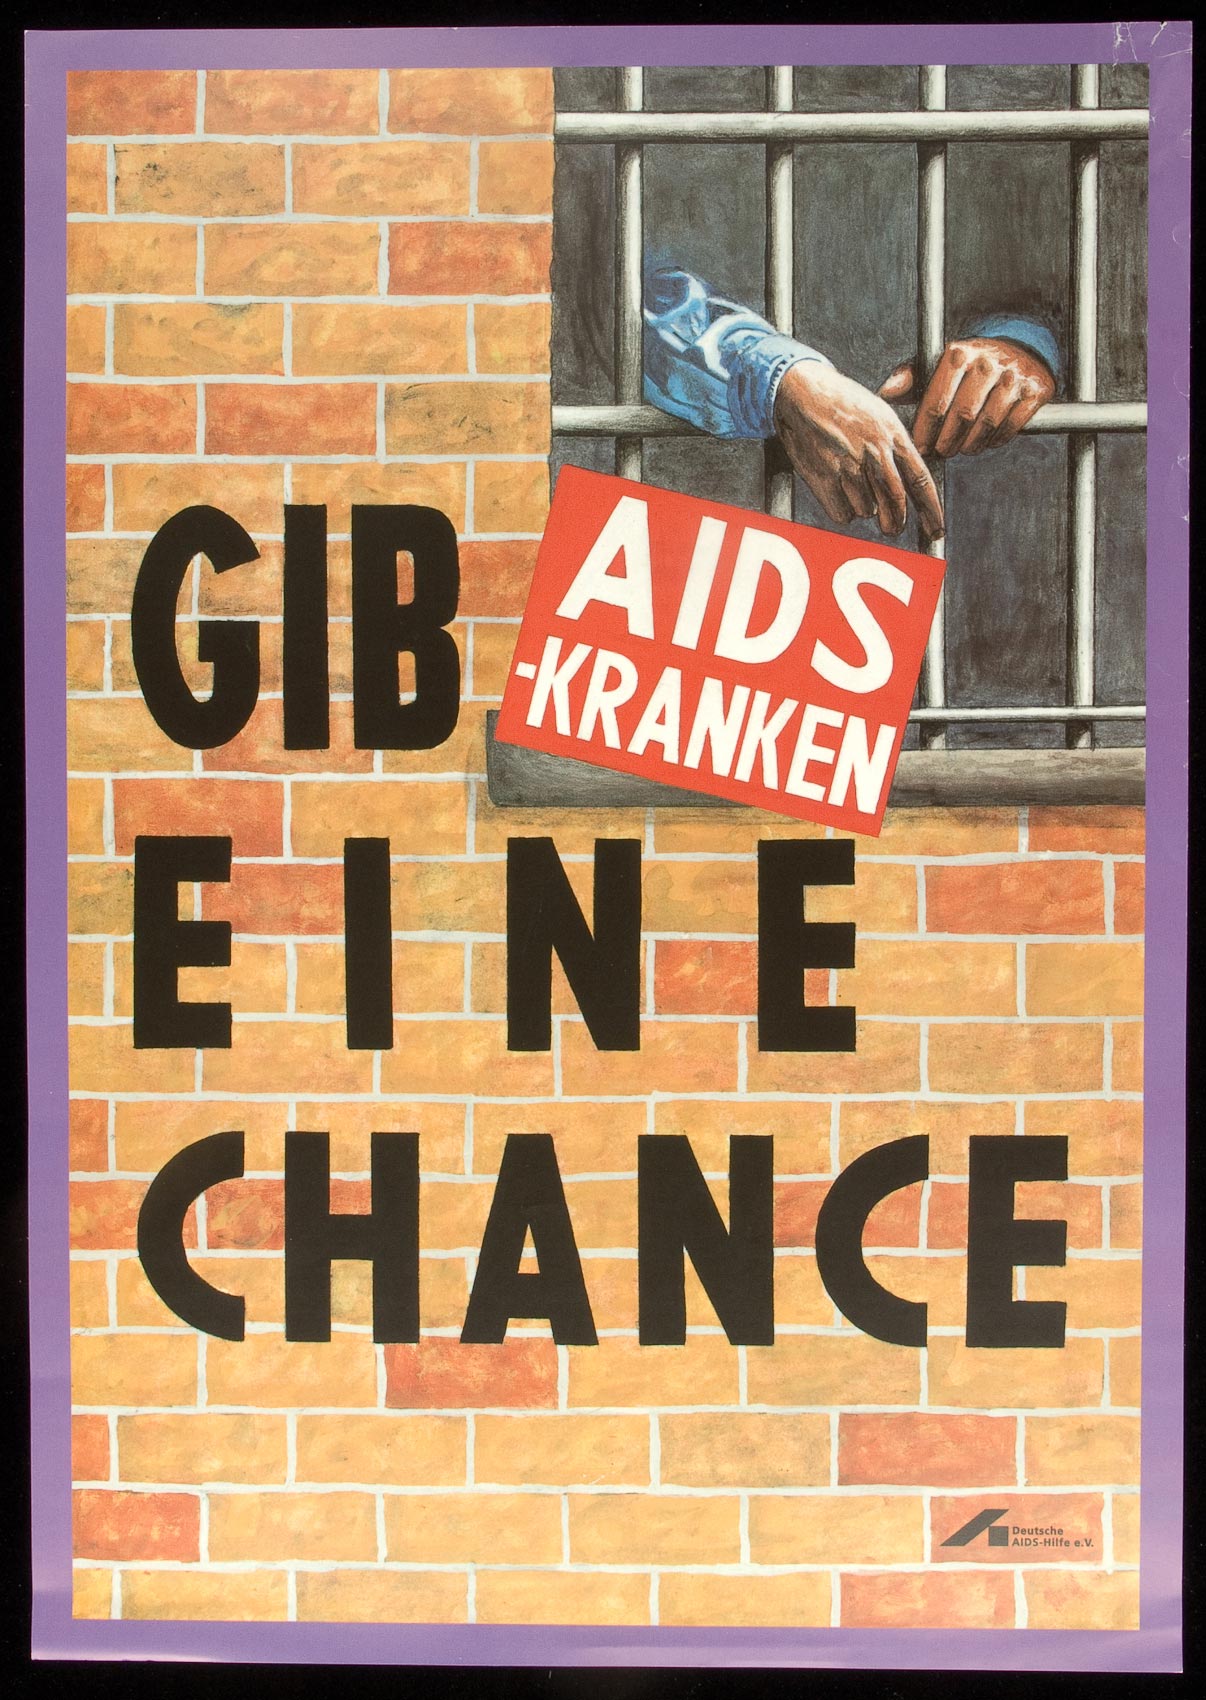 Gib AIDS-Kranken Eine Chance (Give AIDS Patients a Chance). 1993, Deutsche AIDS-Hilfe, Germany. 